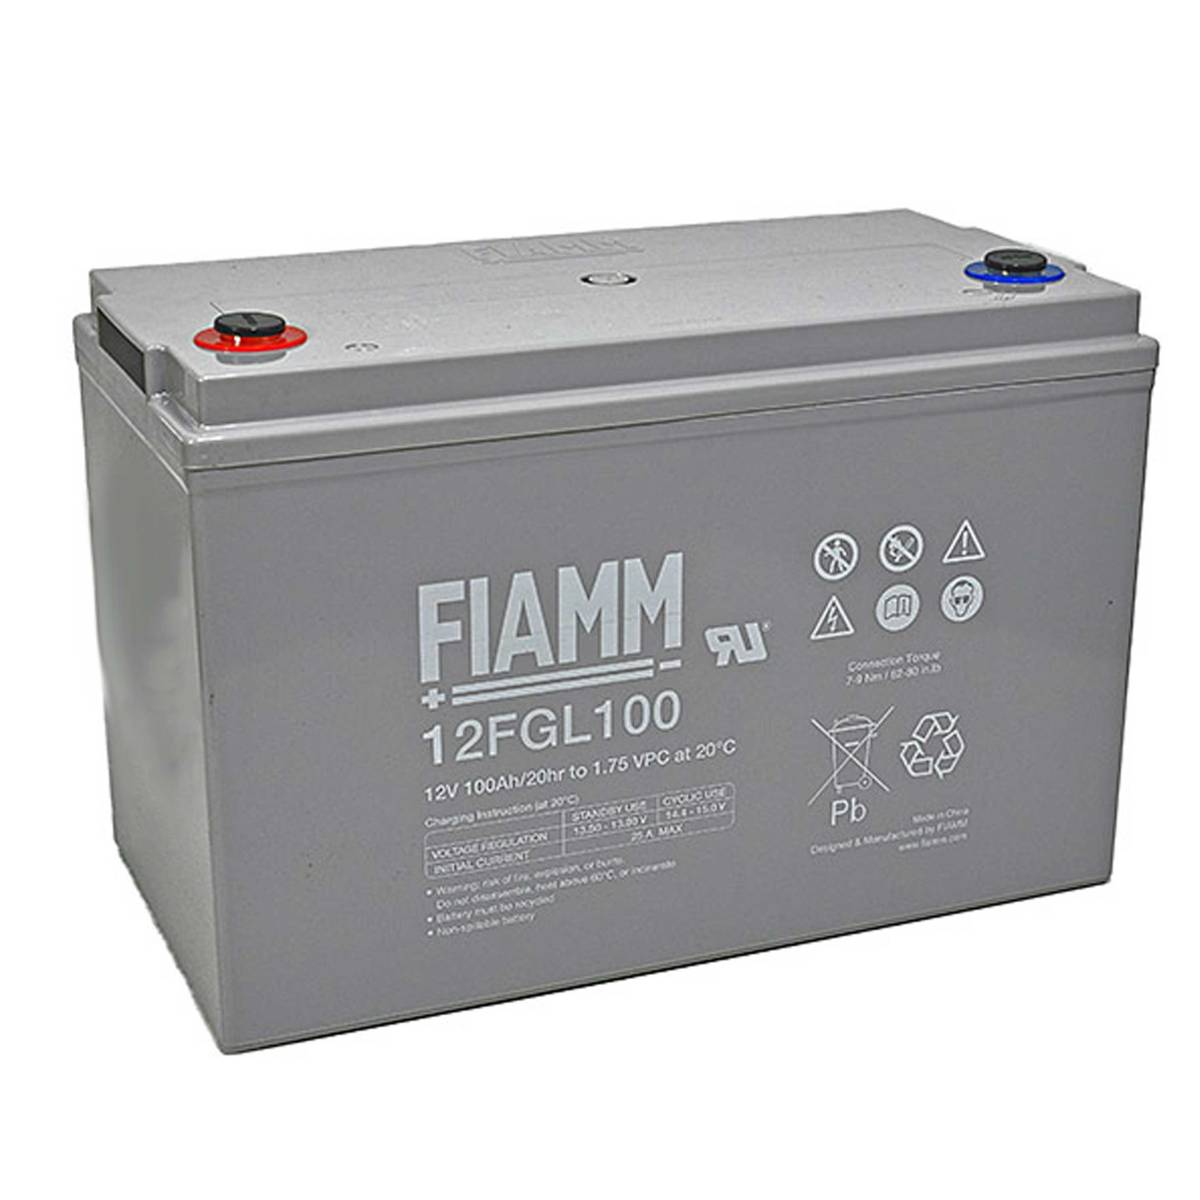 Fiamm 12FGL100 12V 100Ah Blei-Akku / AGM Batterie, Ersatzakkus für USV, Sicherheitstechnik, Batterien für